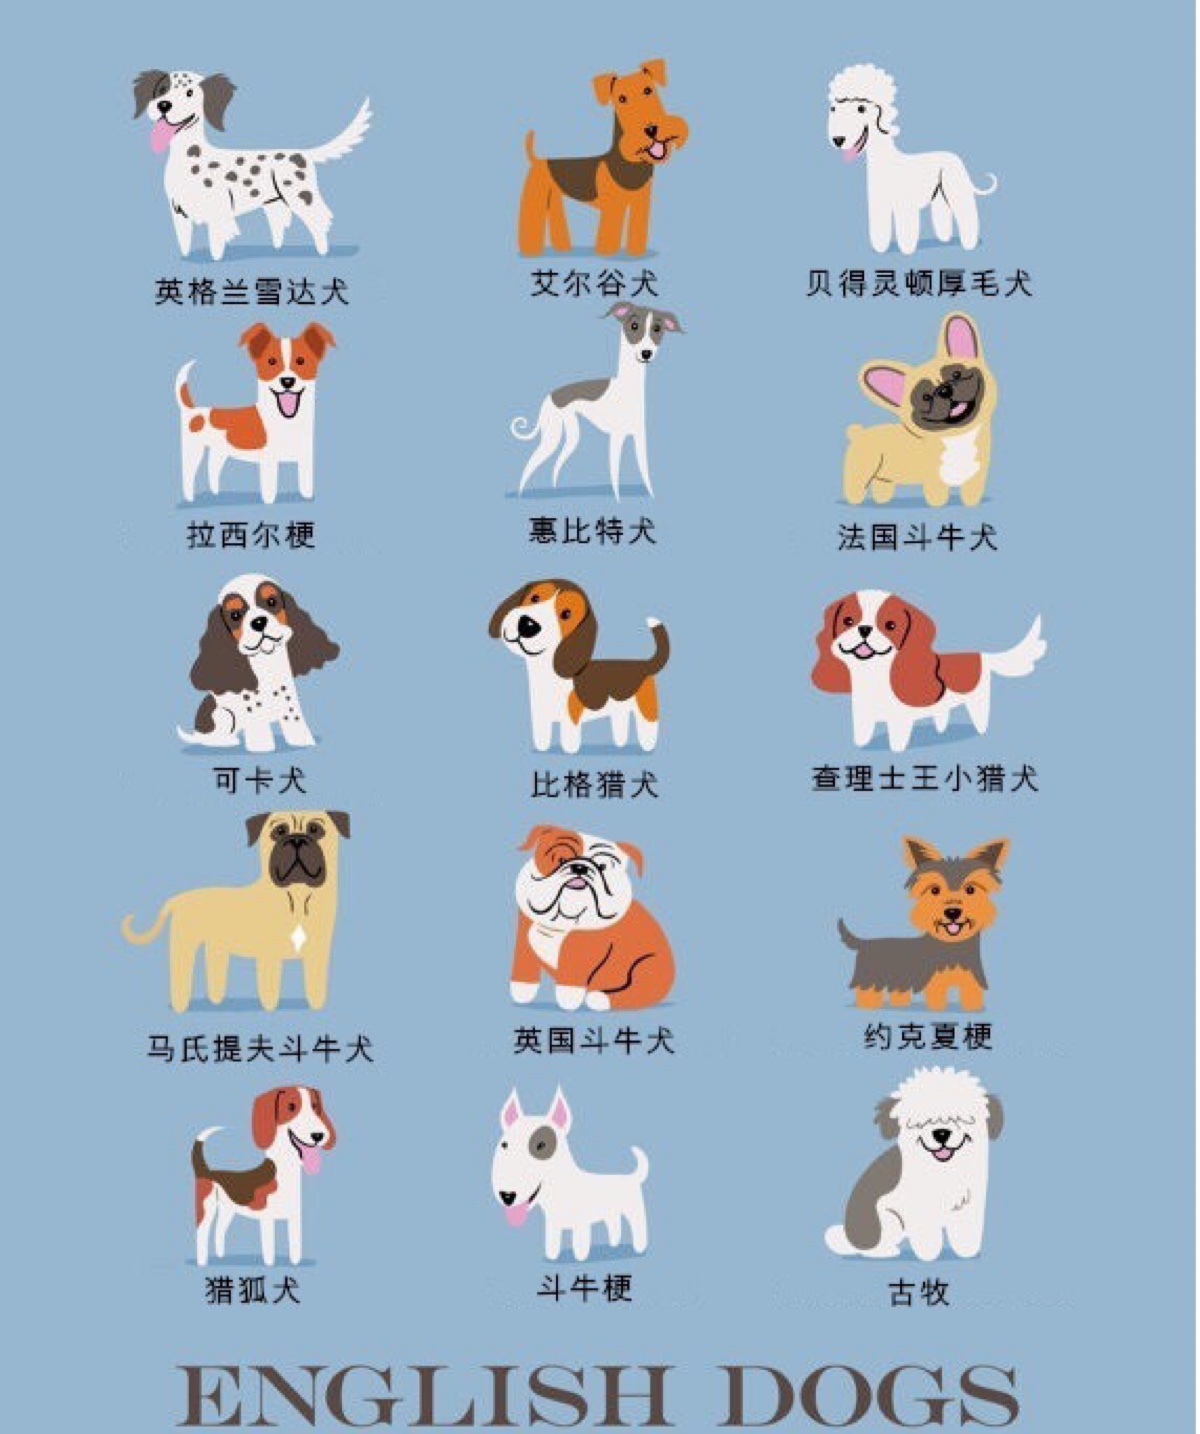 海报具有说明功能,卡通风格突出世界名犬世界名犬图片大全狗狗品种